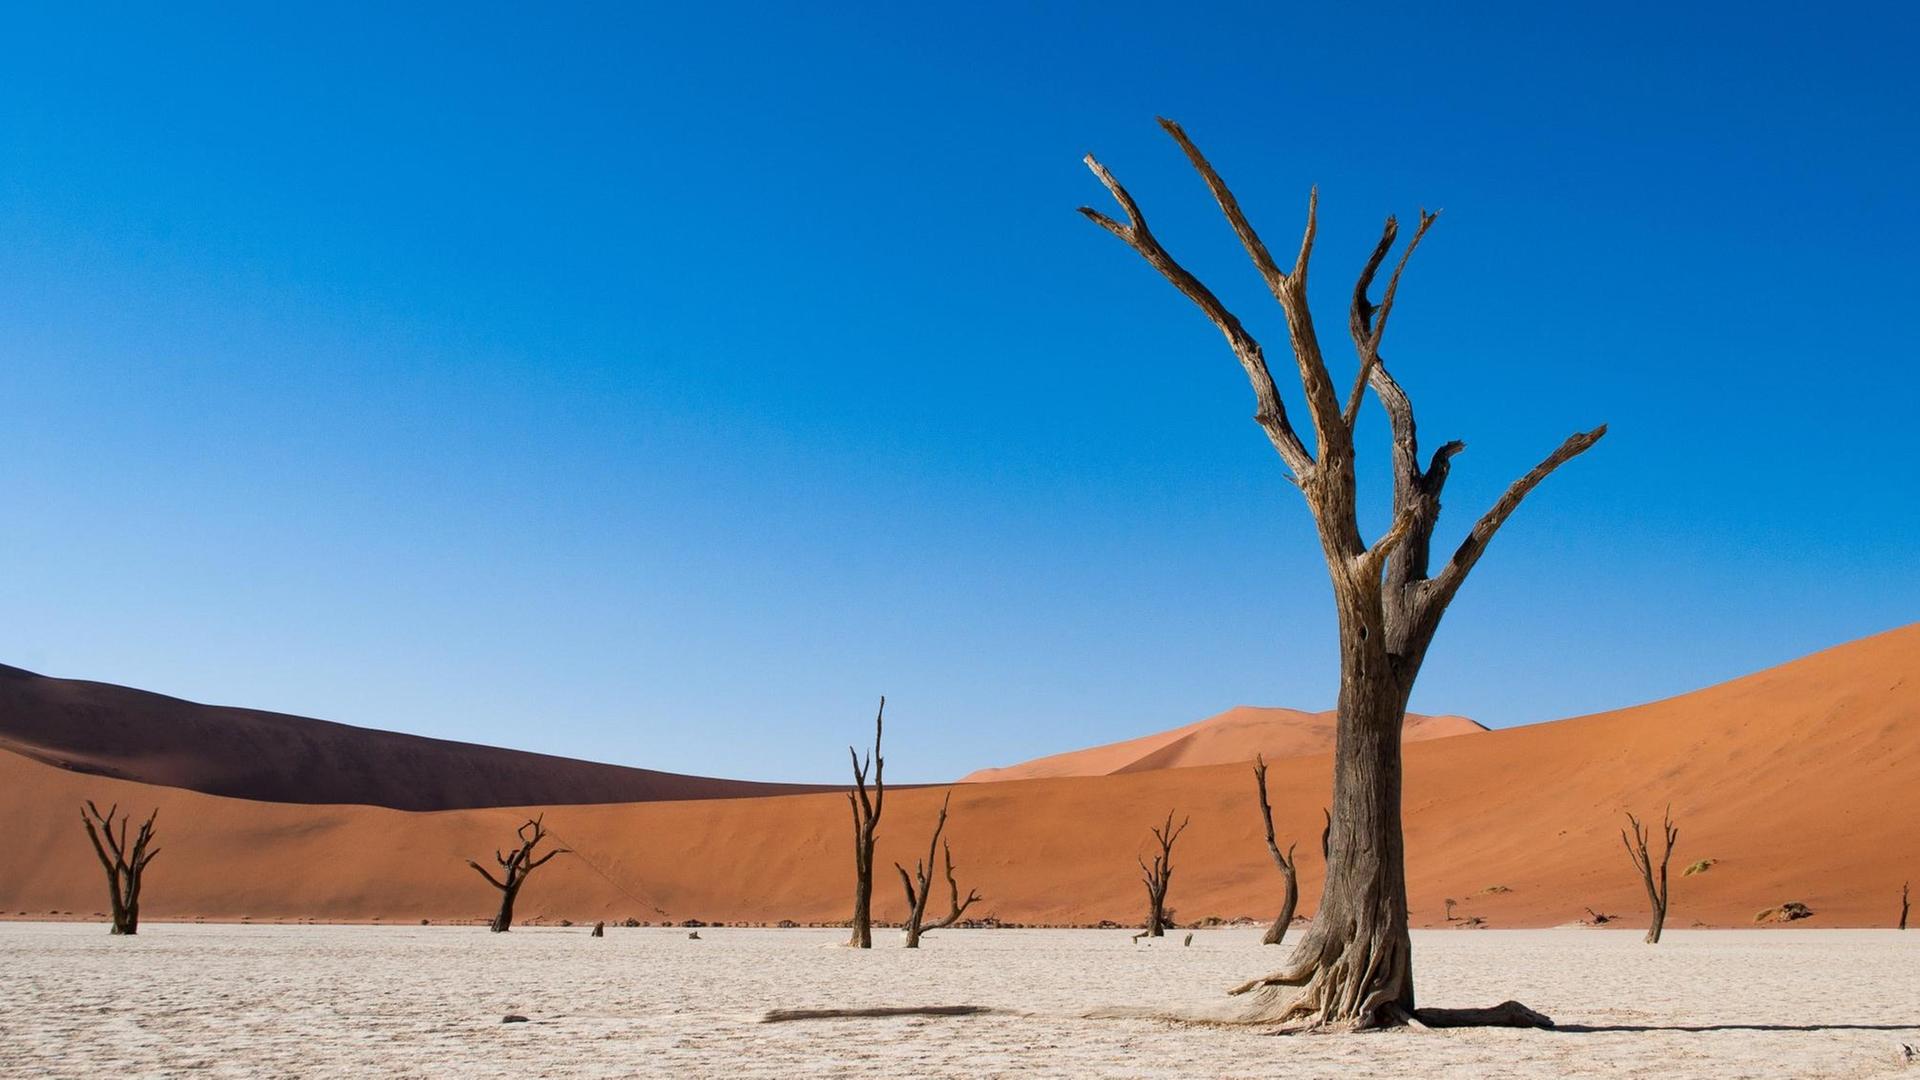 Eine Landschaftsaufnahme zeigt Wüstenlandschaft "Deadvlei" im Namib-Naukluft National Park in Namibia. Vor einer rötlichen Sanddüne unter blauem klaren Himmel sind tote Bäume zu sehen.